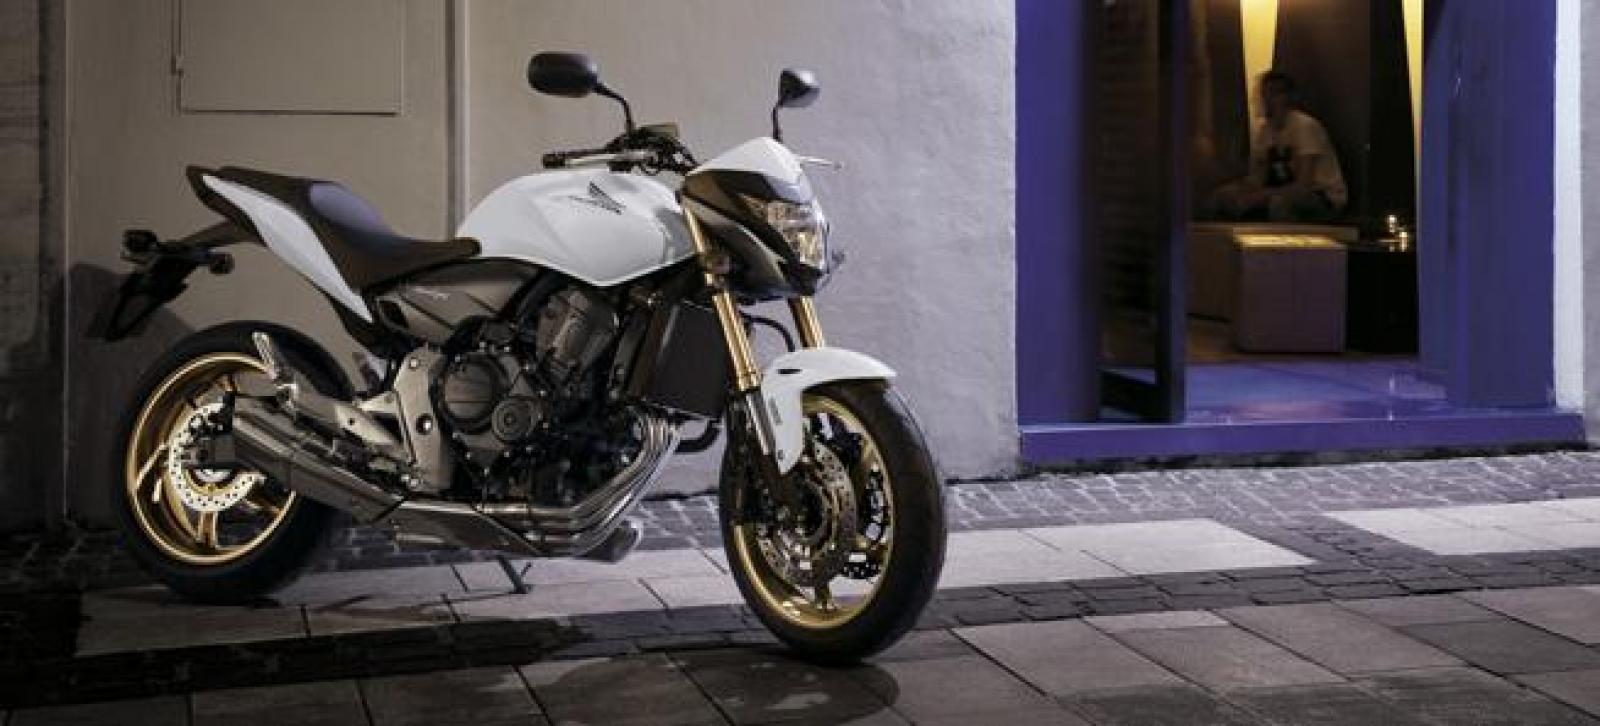 Хонда сб 900 ф хорнет - типичный дорожный мотоцикл